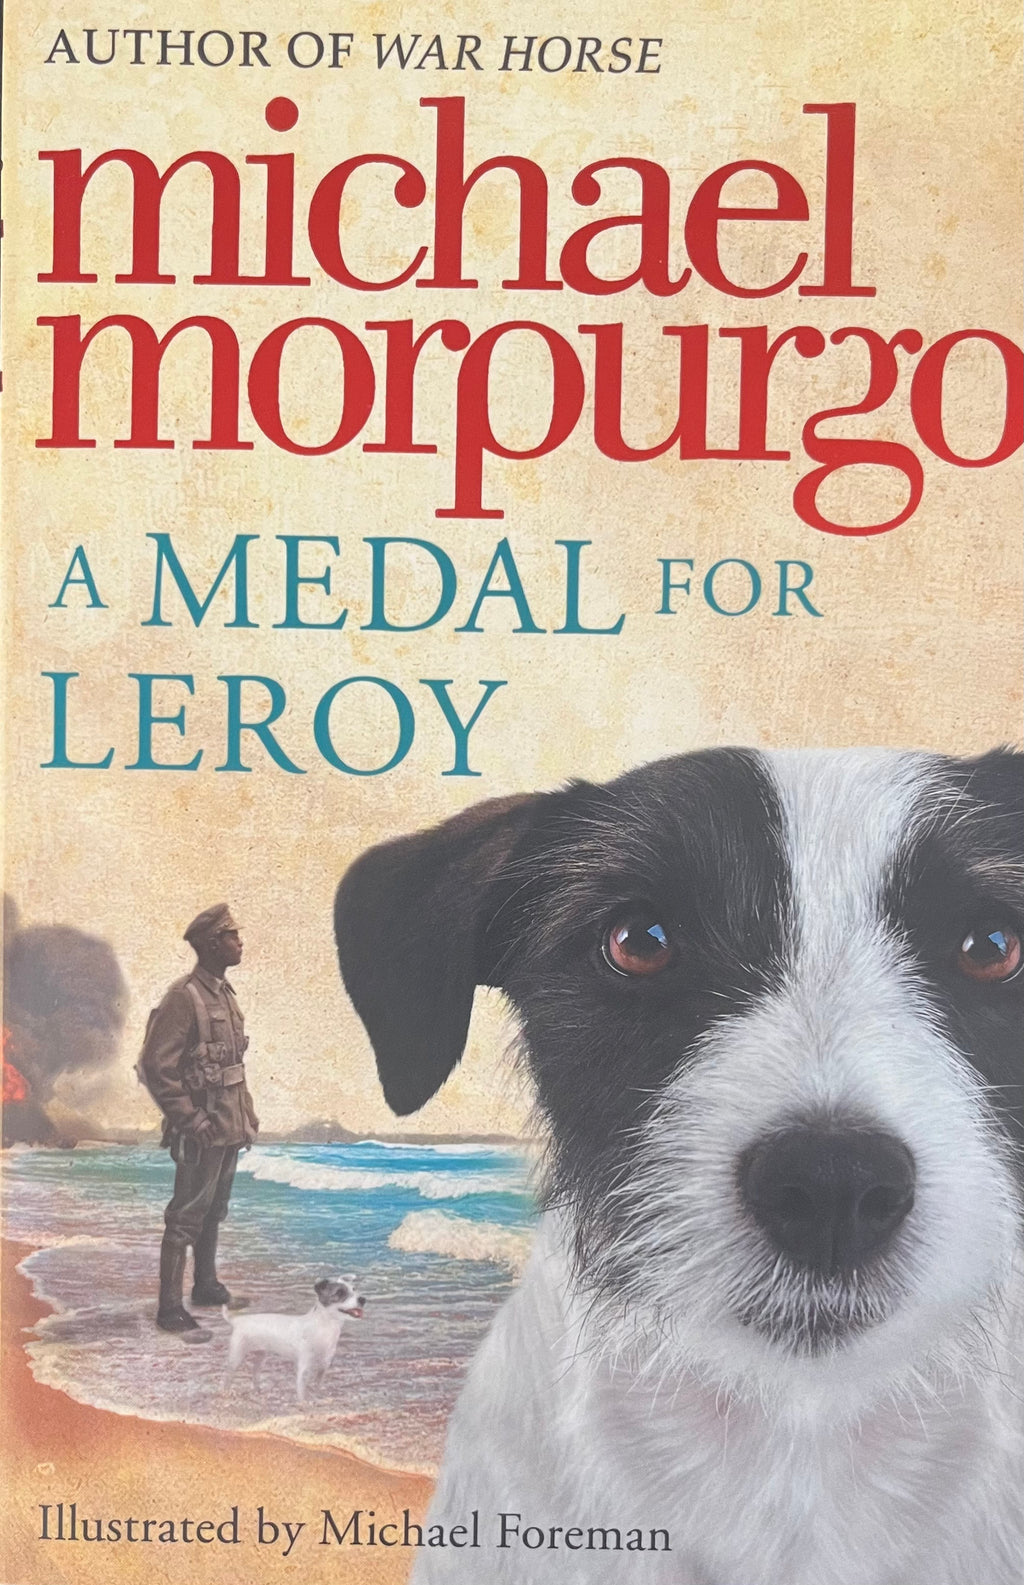 Michael Morpurgo: A Medal for Leroy